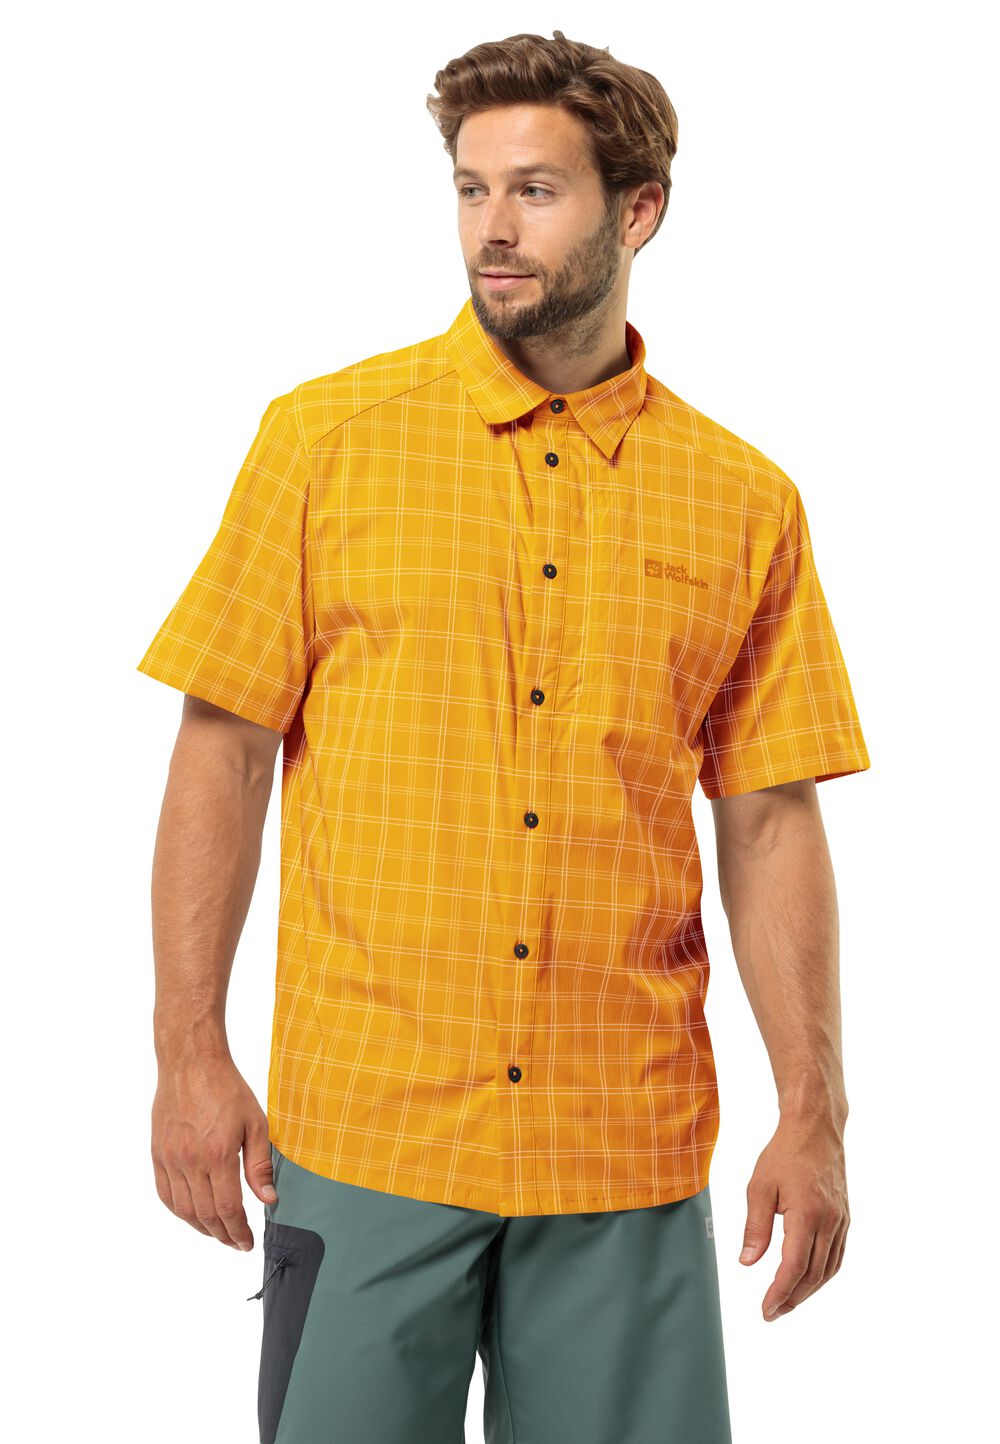 Jack Wolfskin Norbo S S Shirt Men Overhemd met korte mouwen Heren M bruin curry check